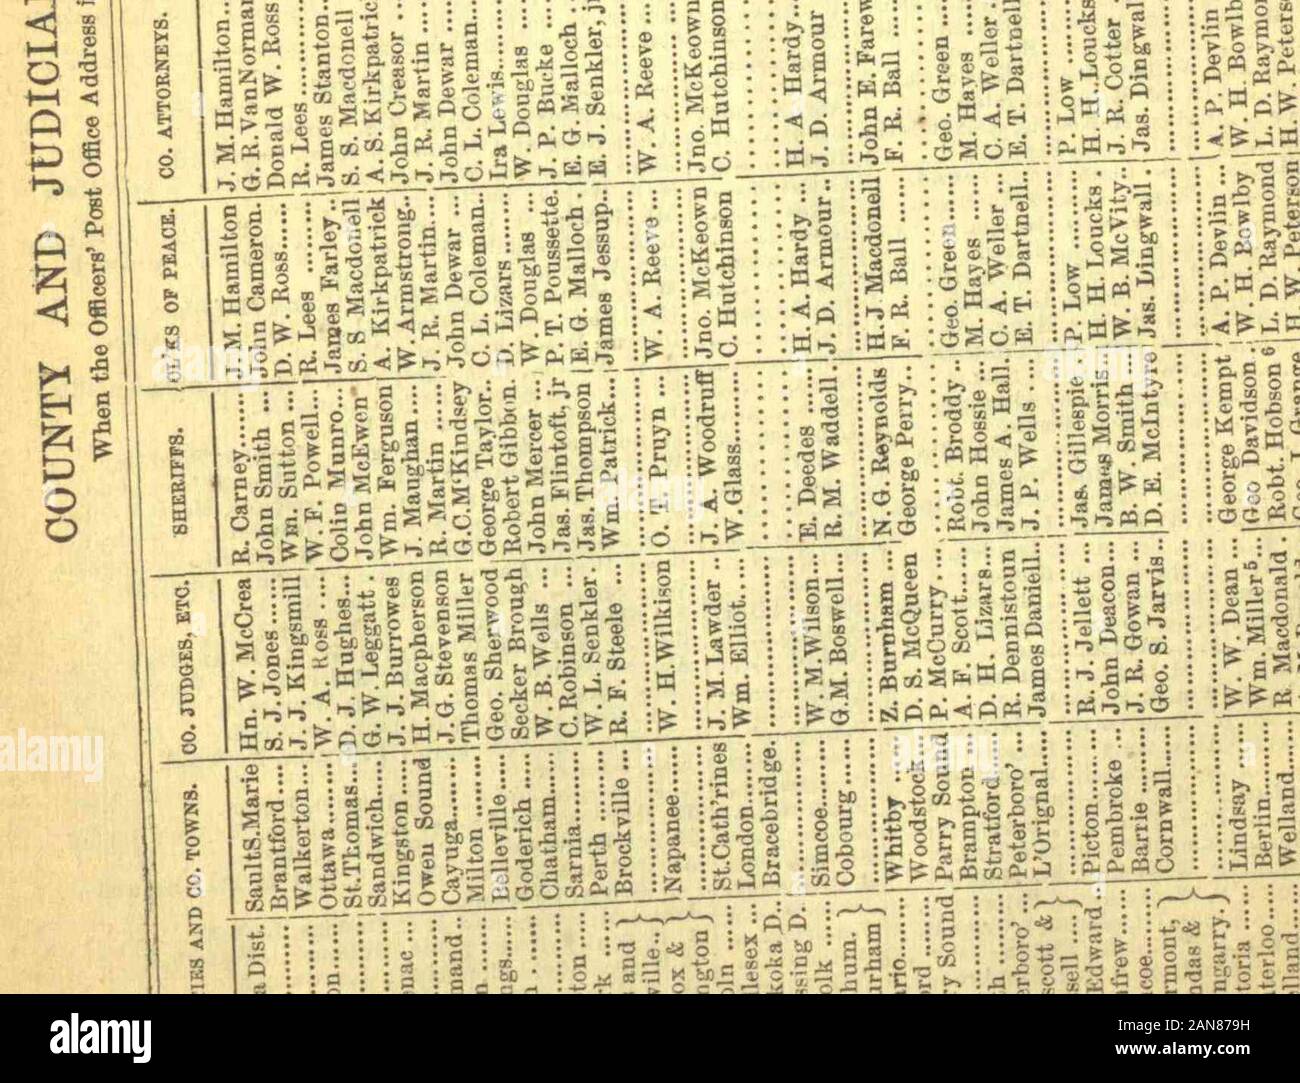 Die kanadische Almanach und Verzeichnis von 1875-1876. $ f?£ Ich^? . Au cgs-SS. ? O.-j3?^^^^ Al O, S feg ^ ich Sli? - GH^ fl So&gt;, g ein. [761] - 118 Gemeinden. [1875. Stockfoto